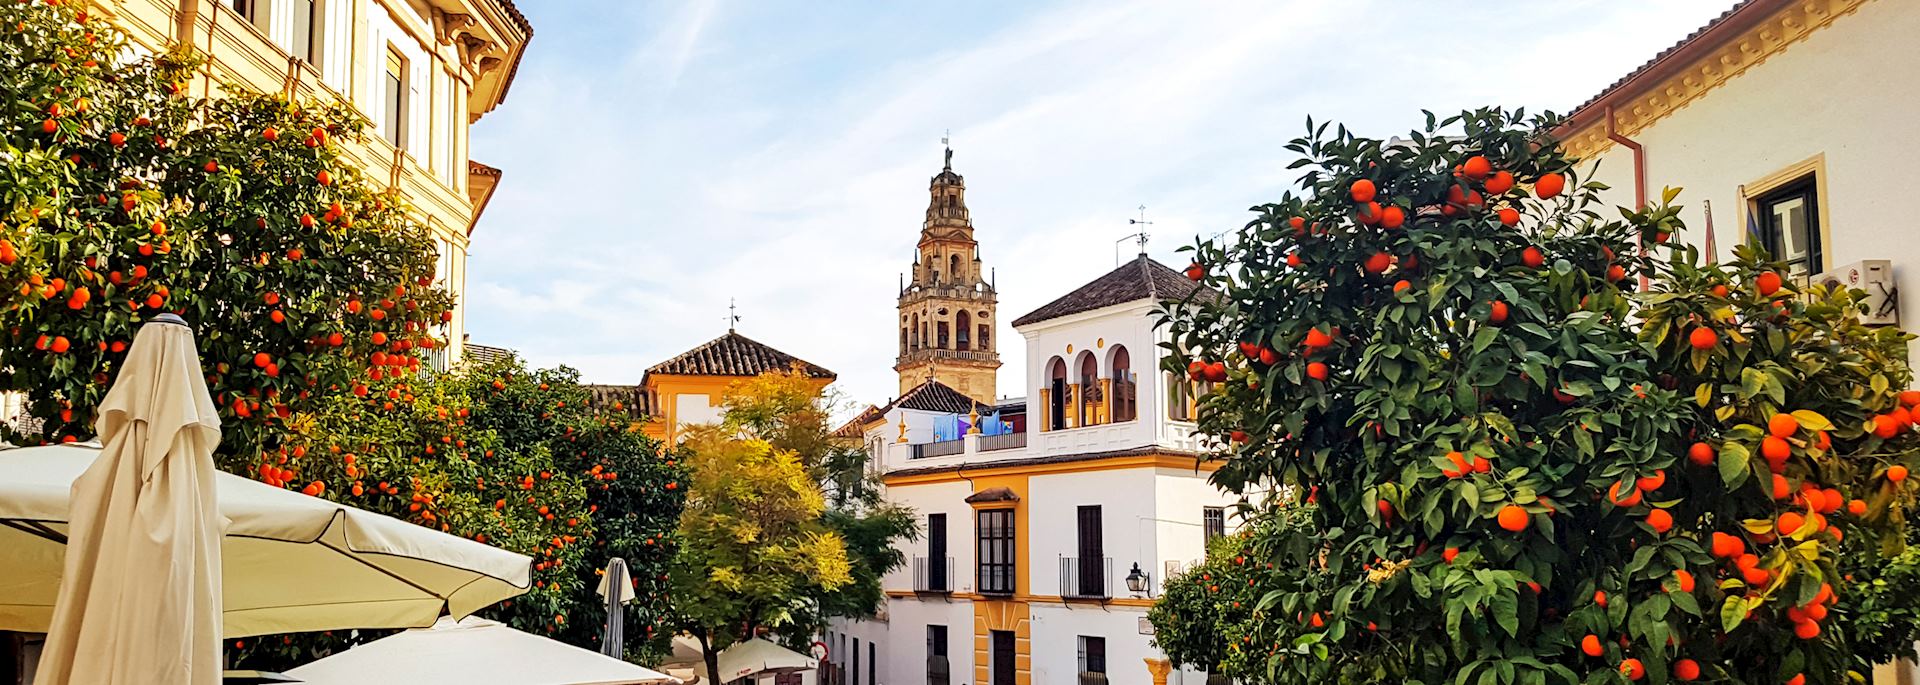 Sevilla Old Town